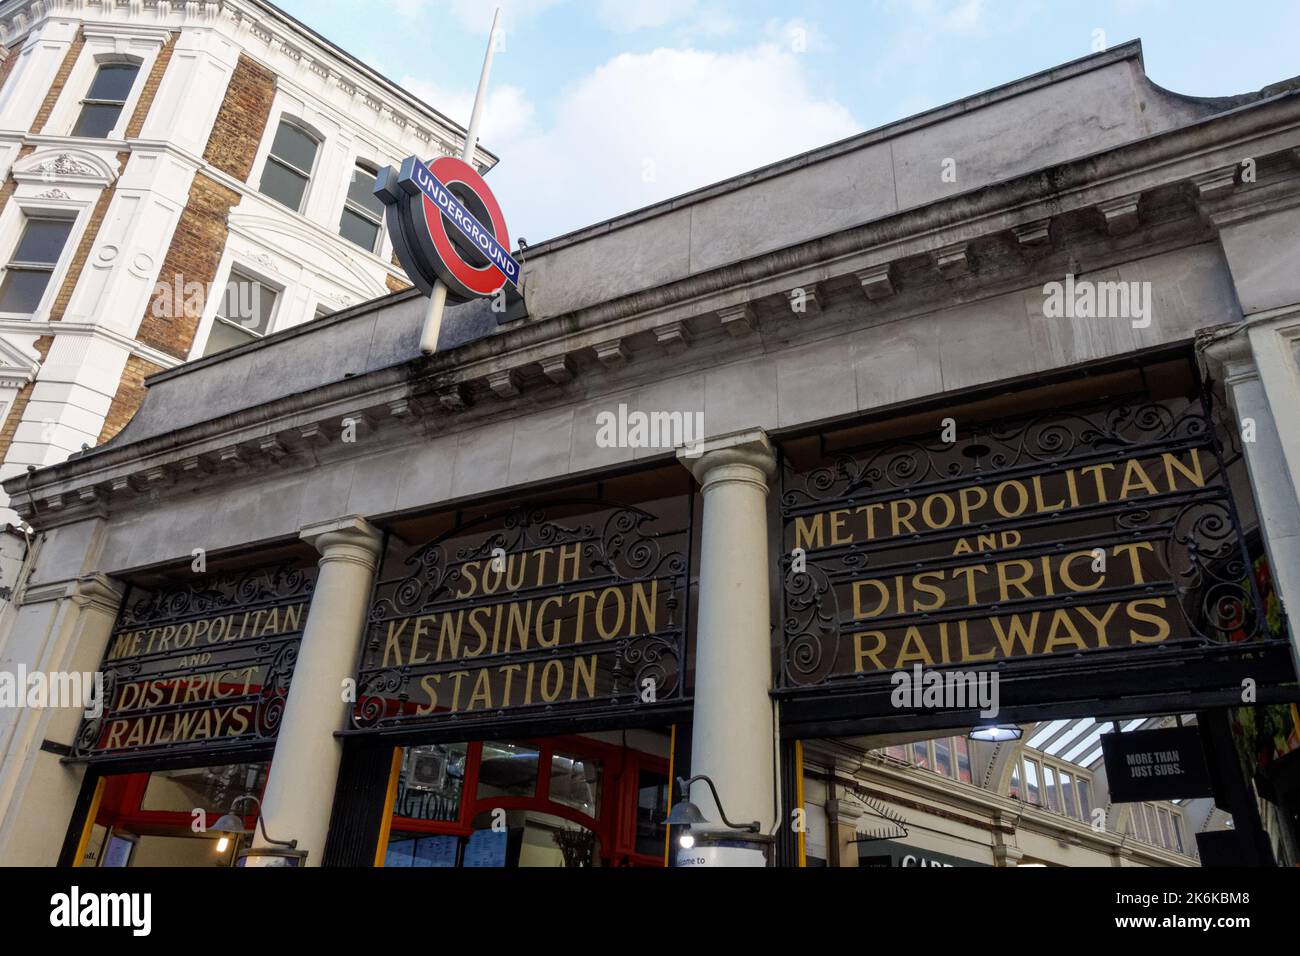 Métro South Kensington, panneau indiquant la station de métro Londres Angleterre Royaume-Uni Banque D'Images